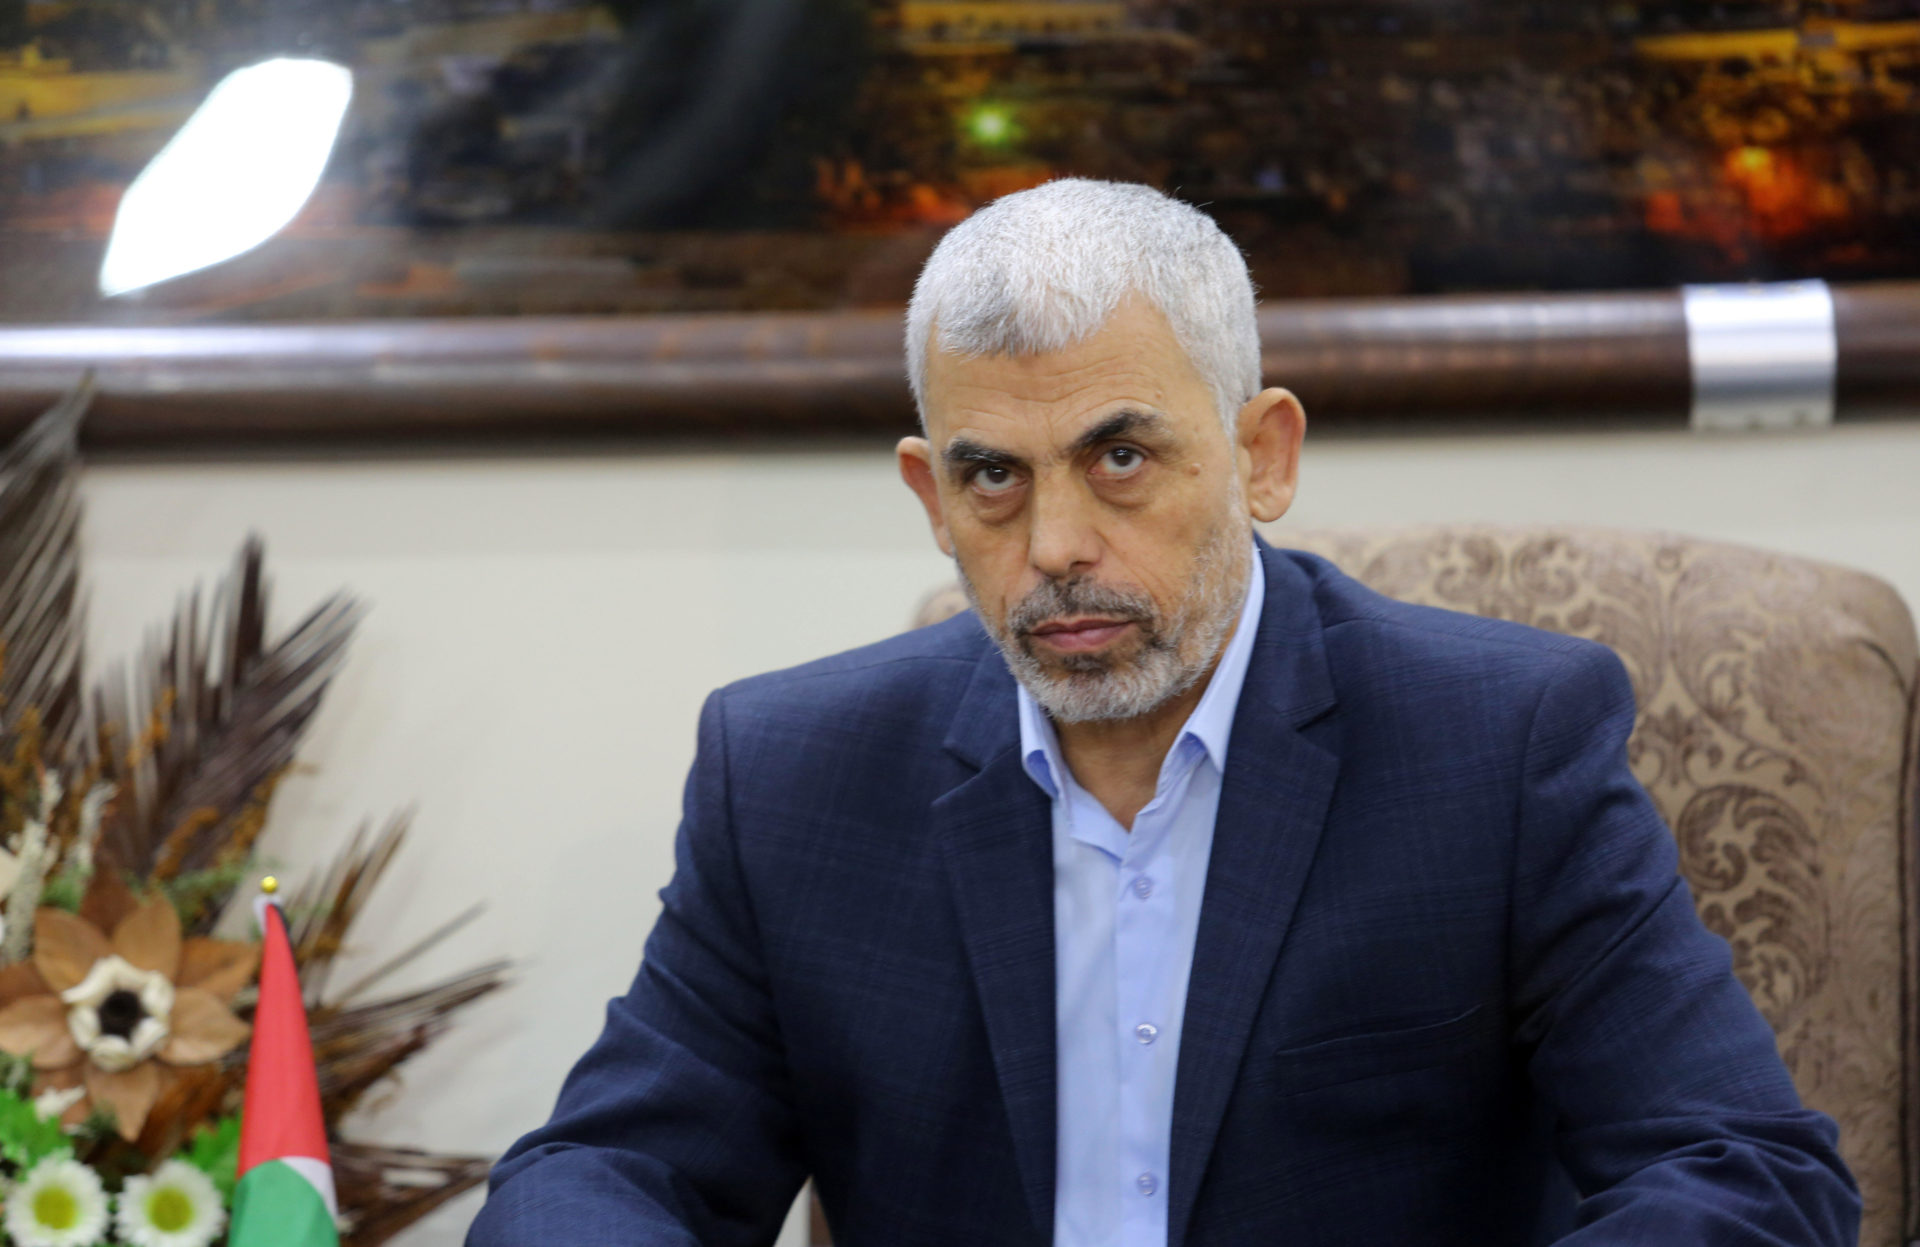 Hamas leader Yahya Sinwar. Image: ZUMA Press, Inc. / Alamy Stock Photo 